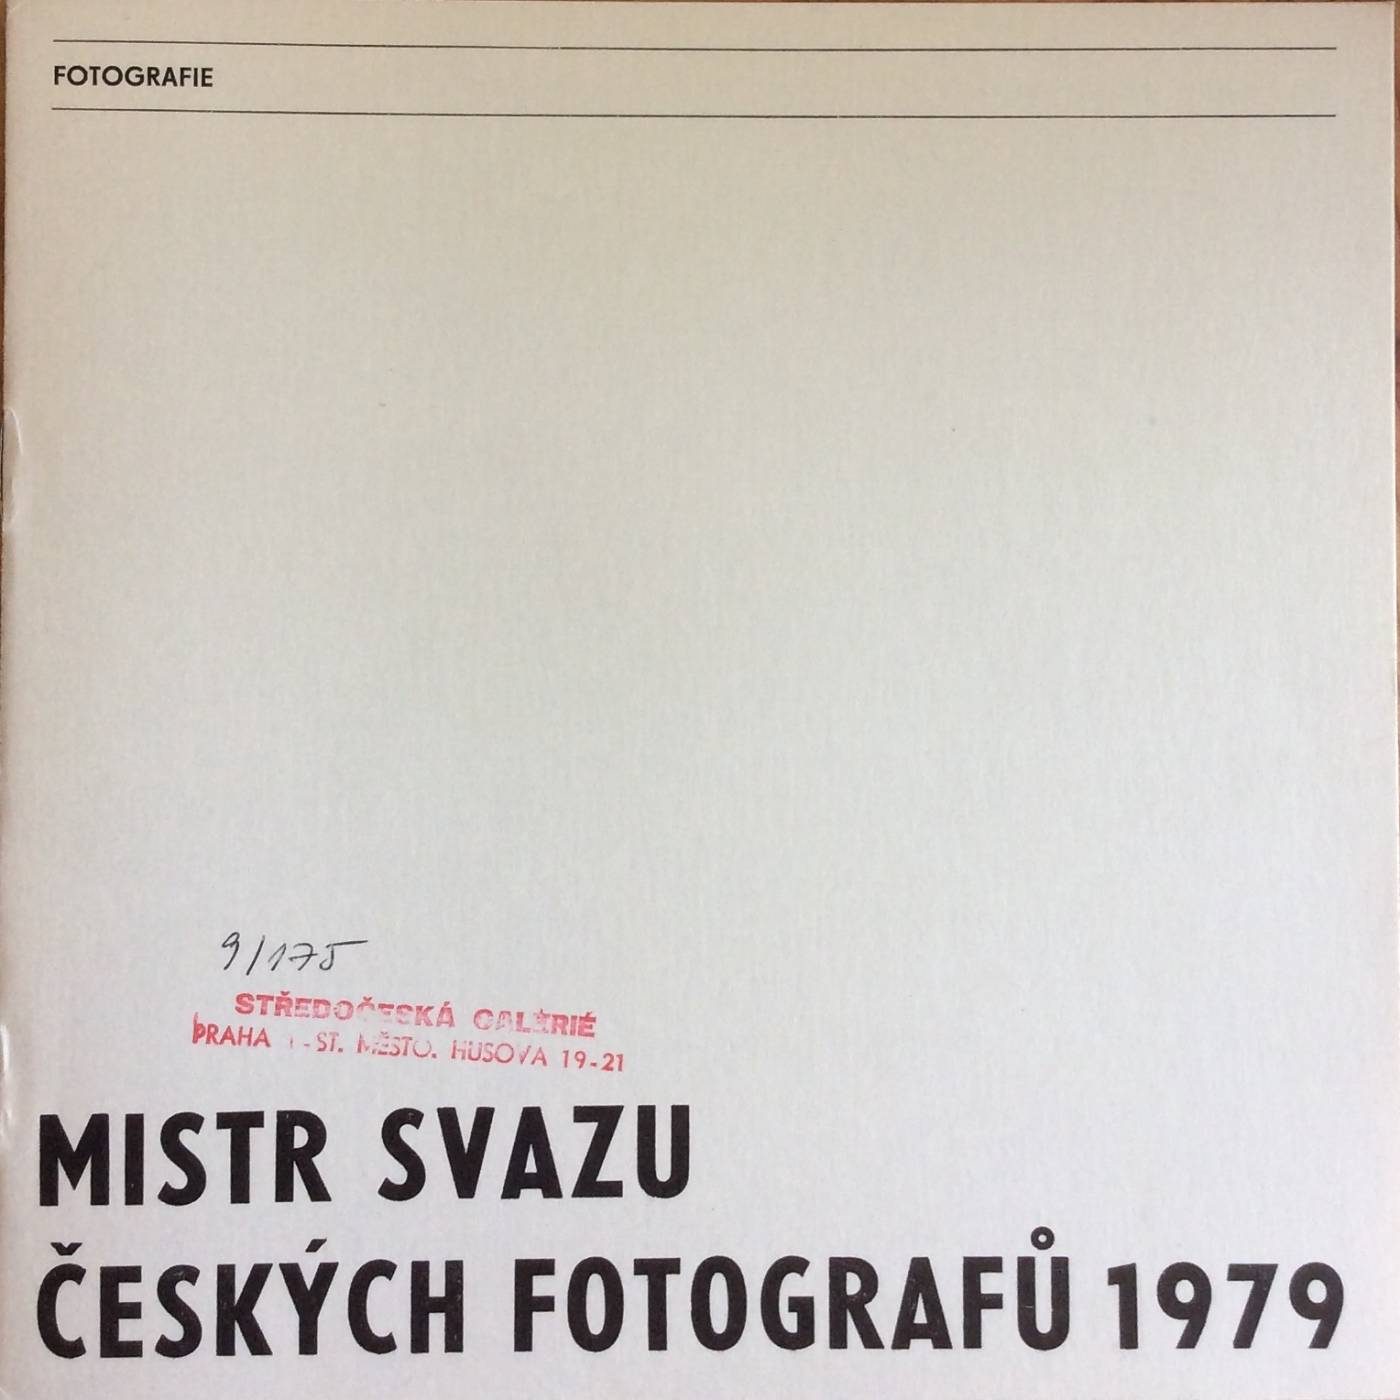 Mistr svazu českých fotografů 1979